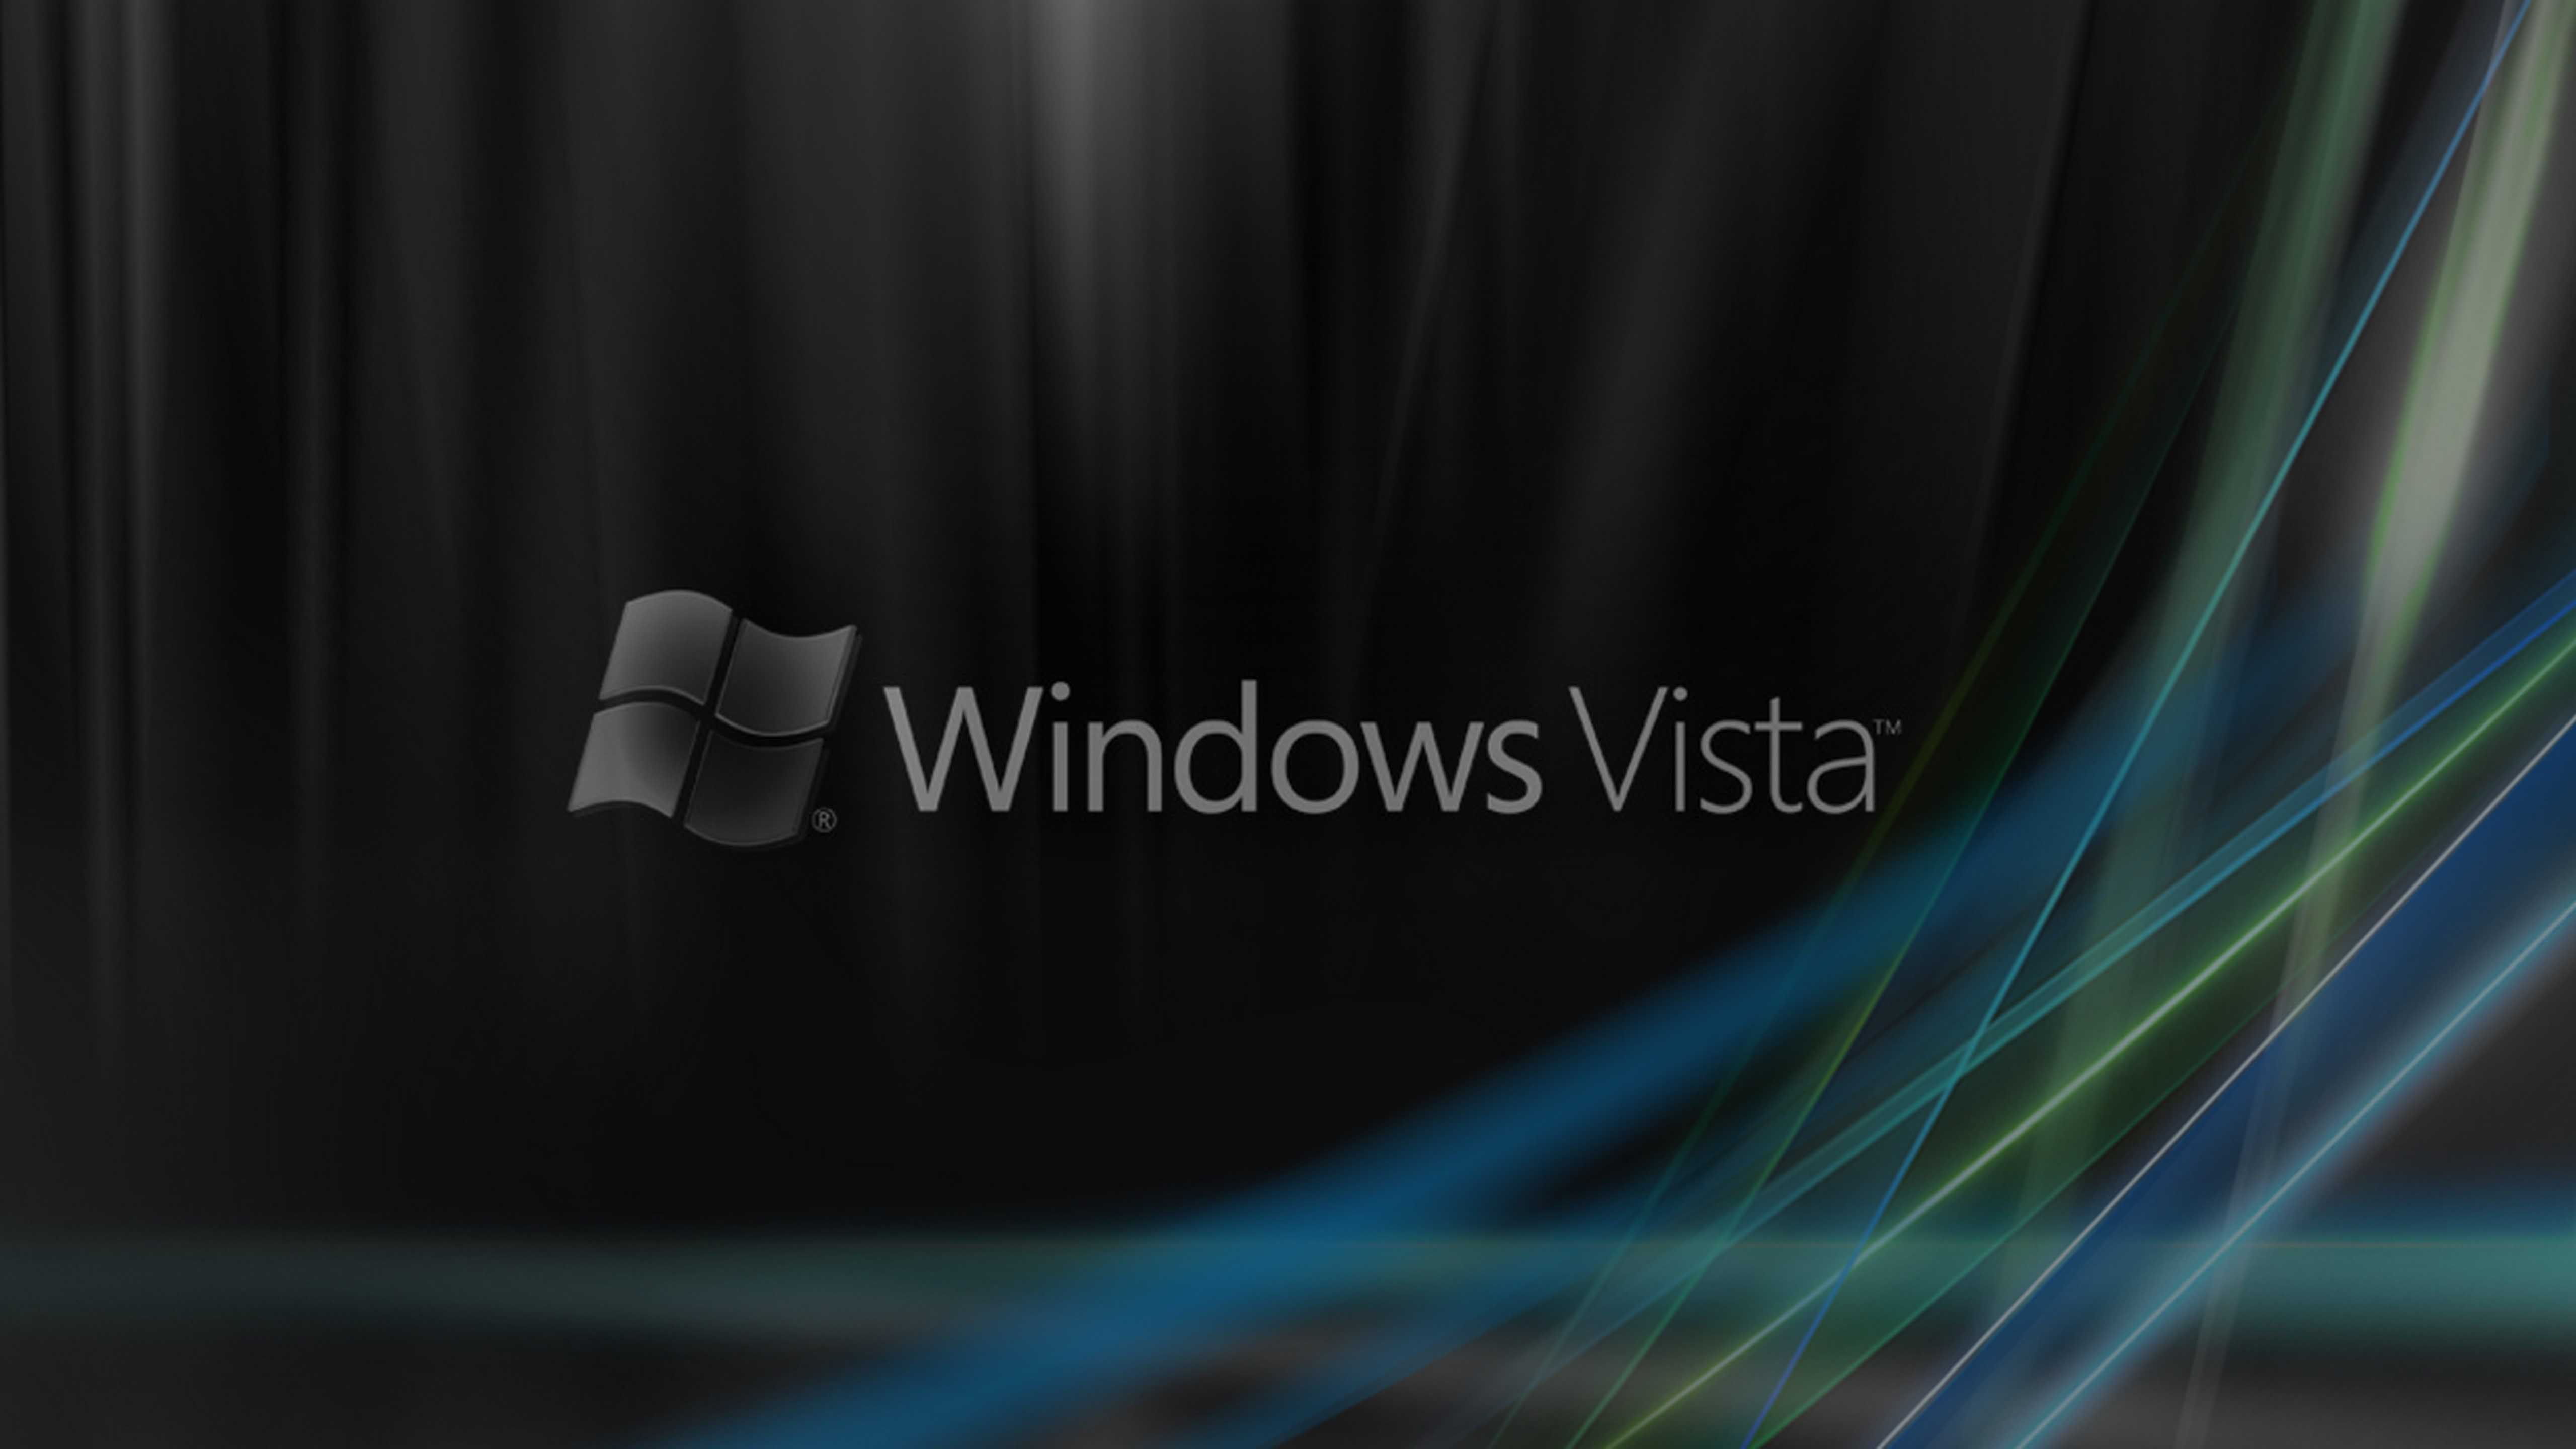 Puters Windows Vista Incredible Wallpaper